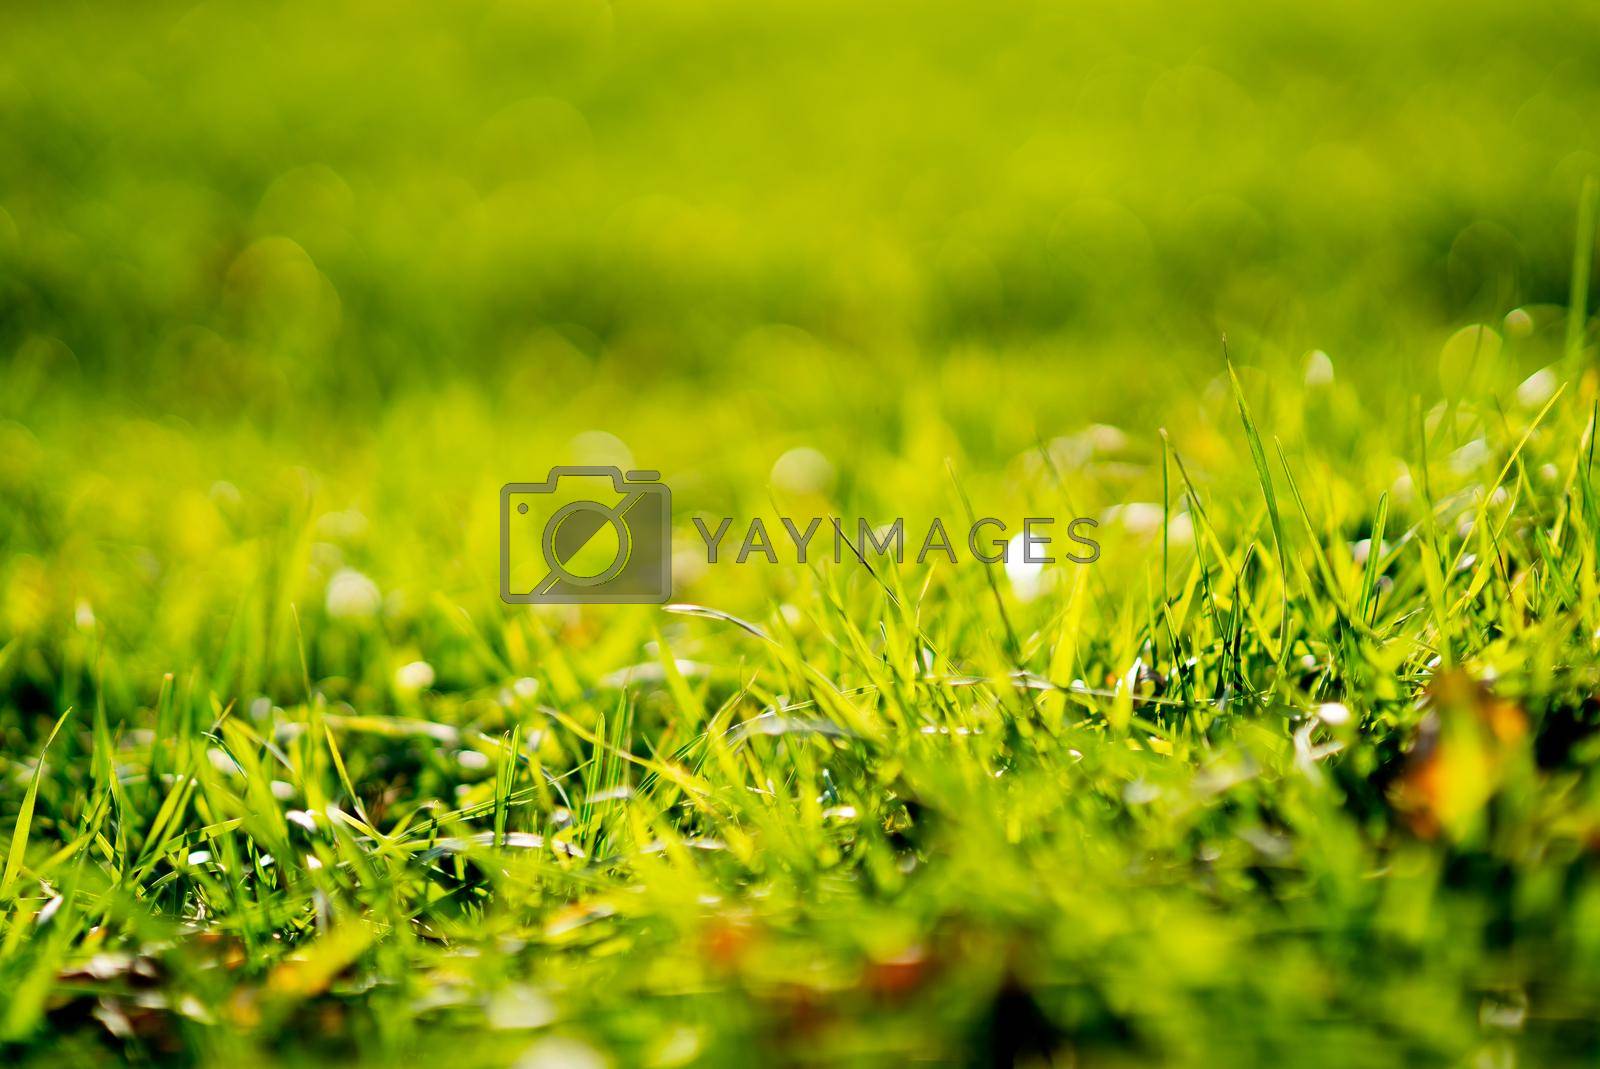 green grass texture, green grass texture,